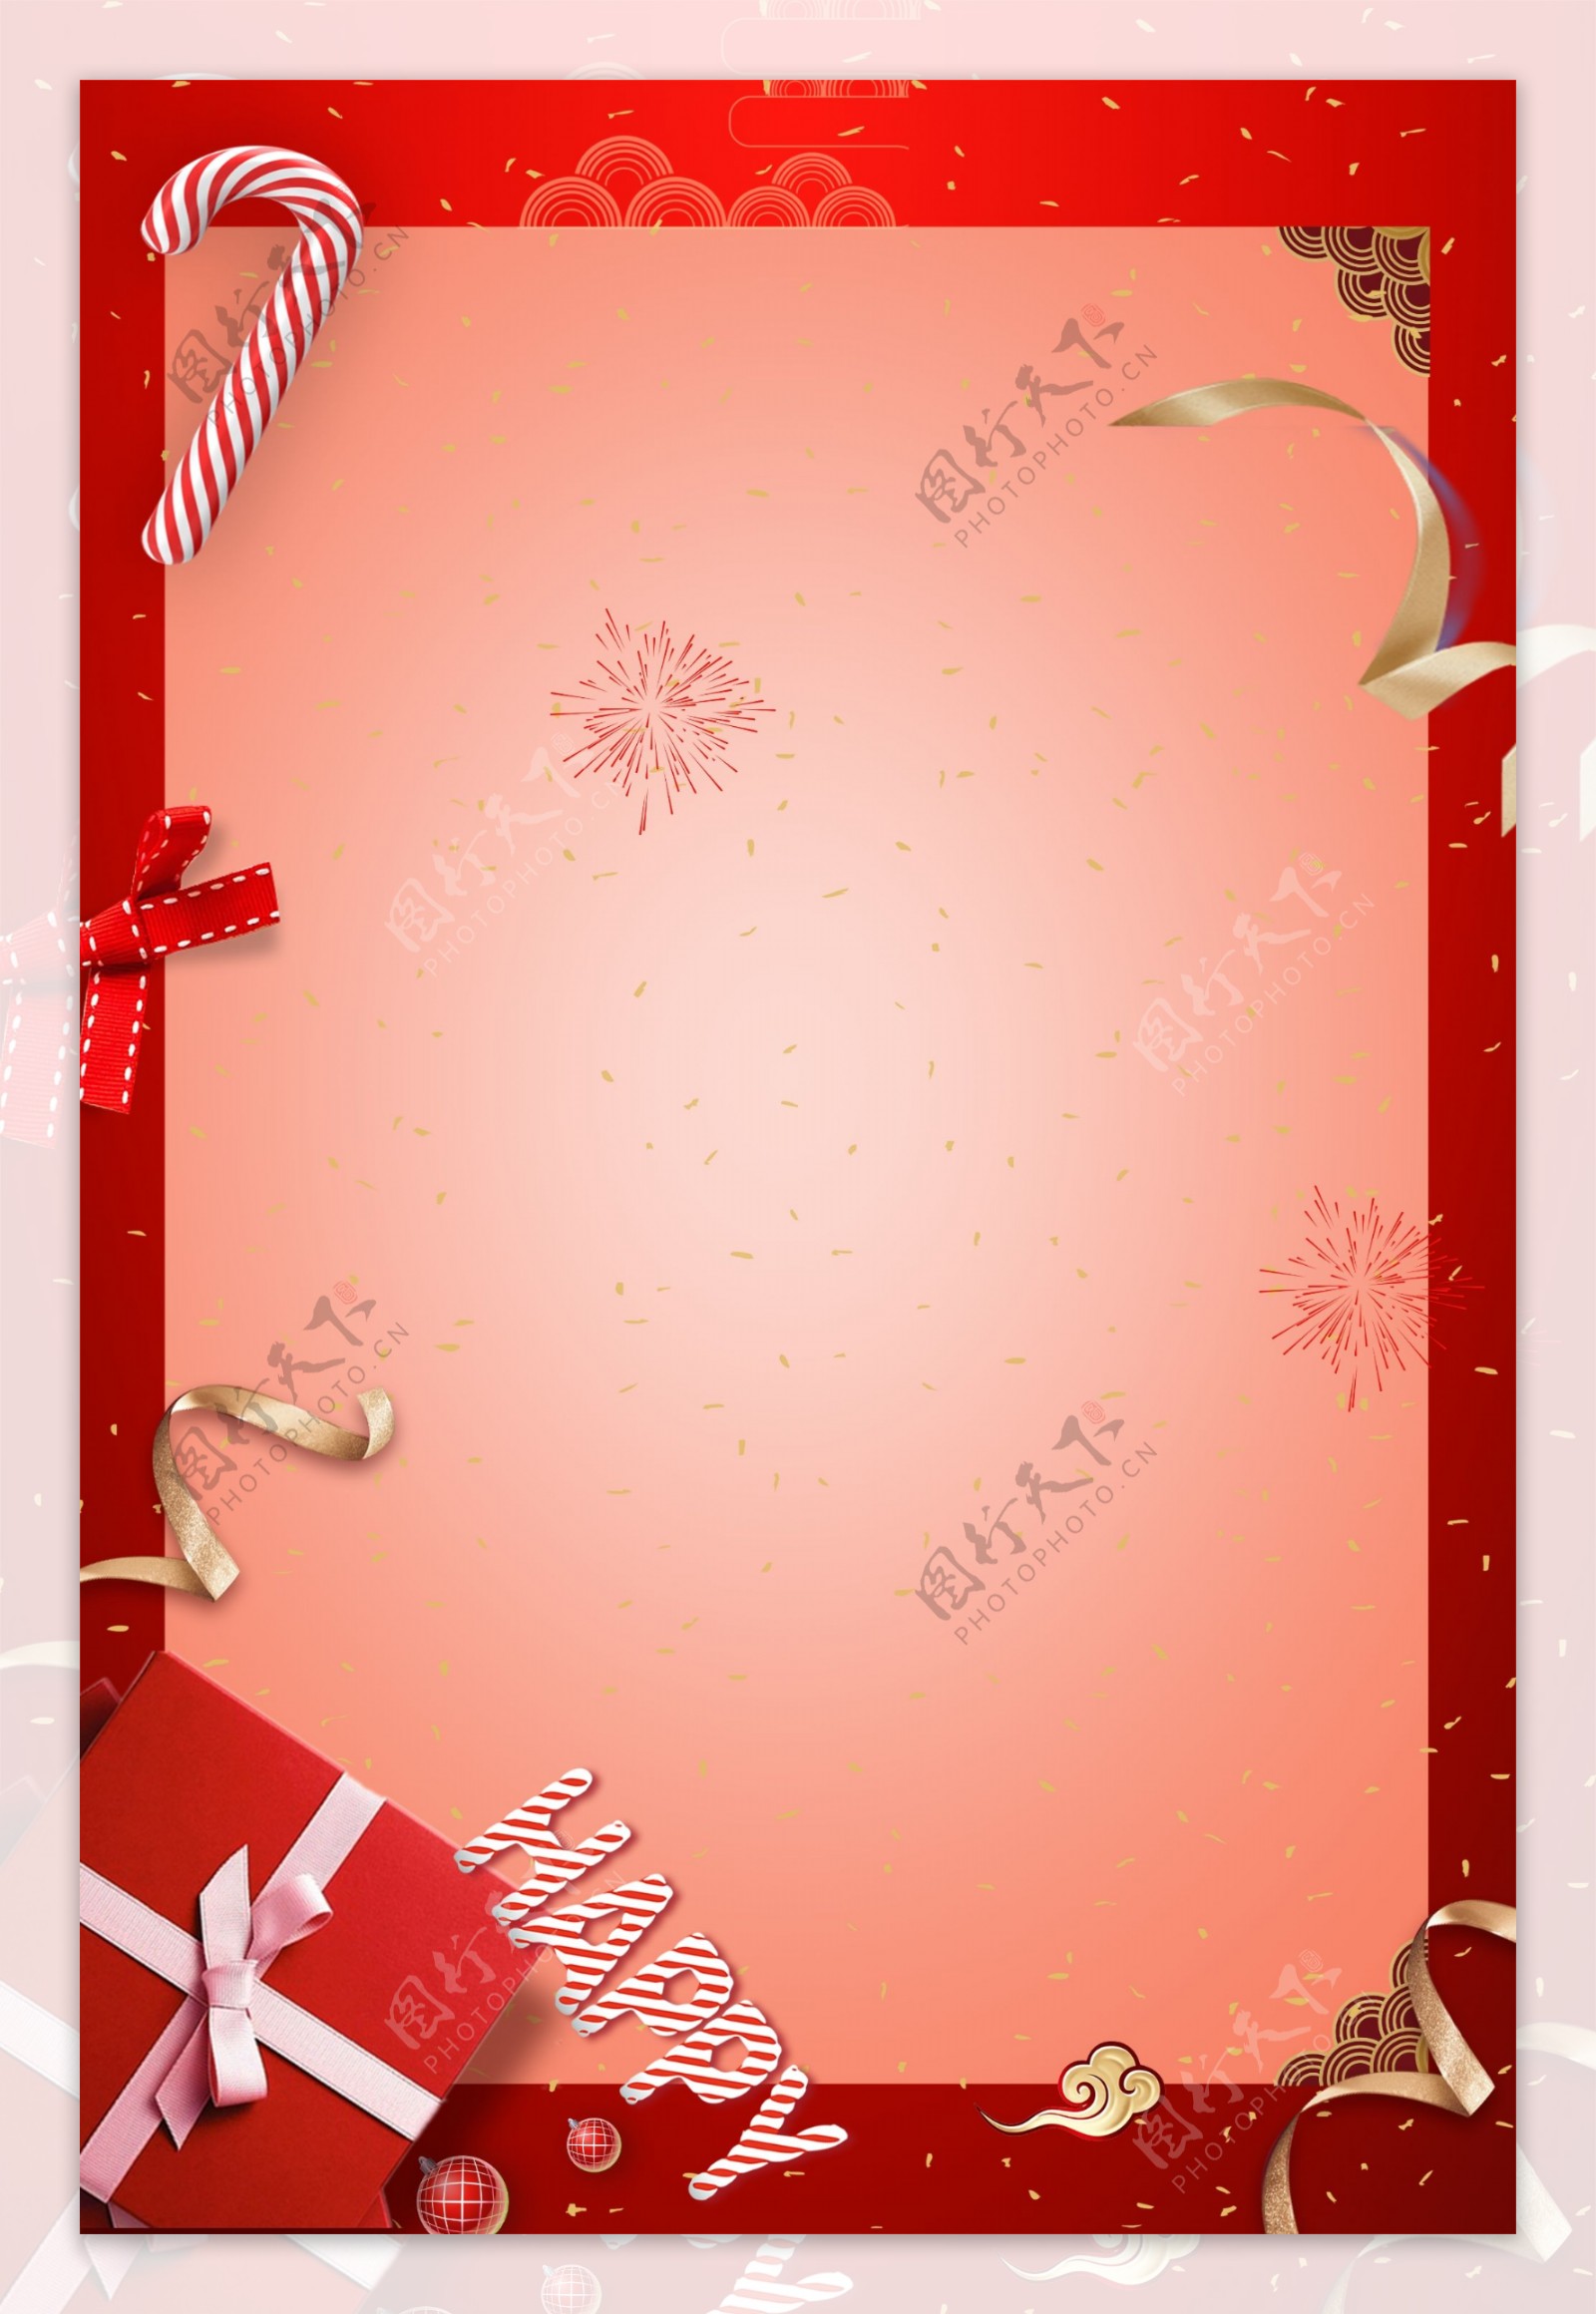 圣诞节红色礼盒广告背景